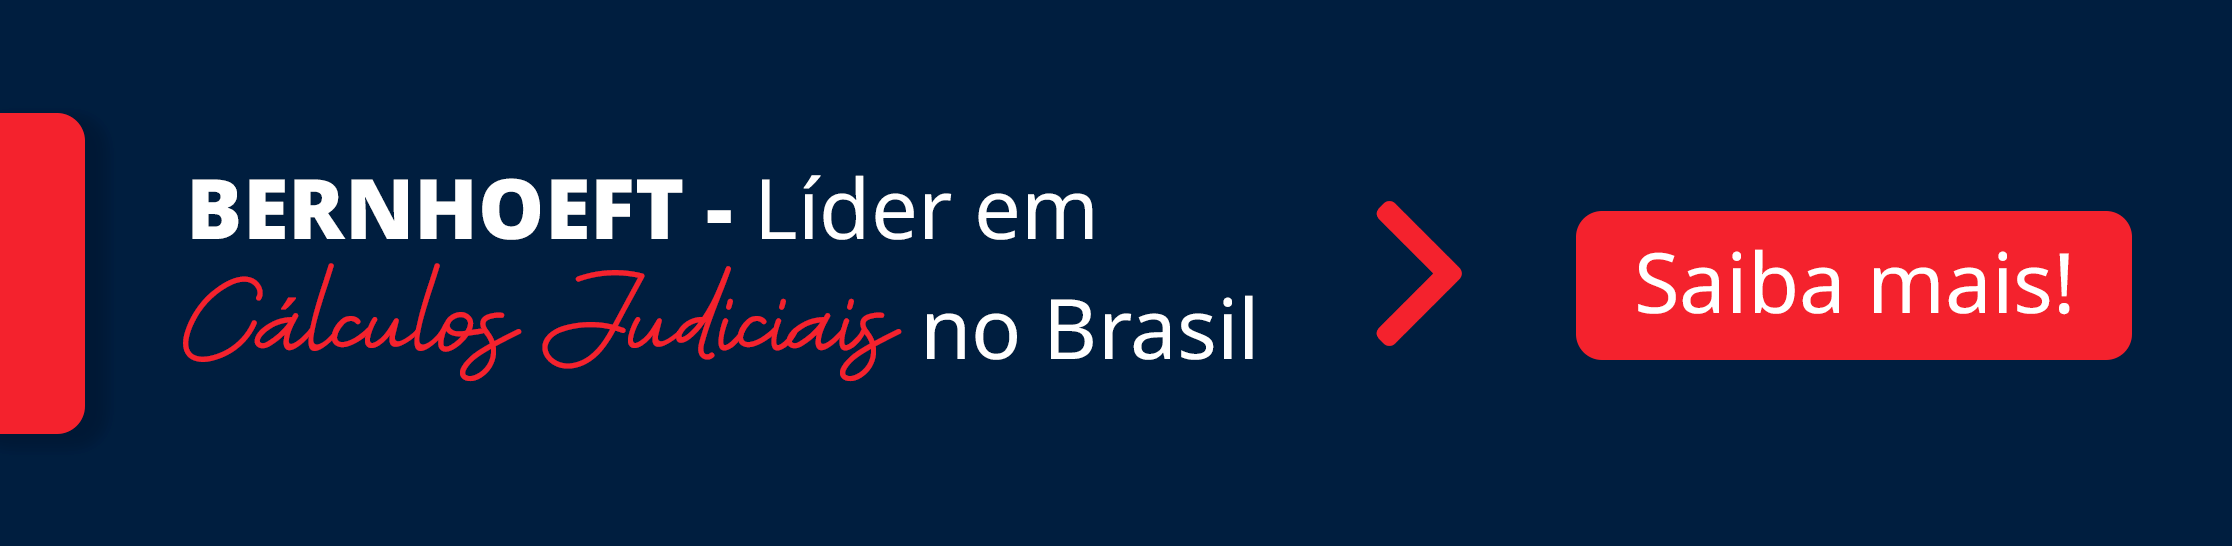 banner azul e vermelho com fonte branca e vermelha: bernhoeft, líder em cálculos judiciais no brasil. link para receber uma proposta comercial disponível.